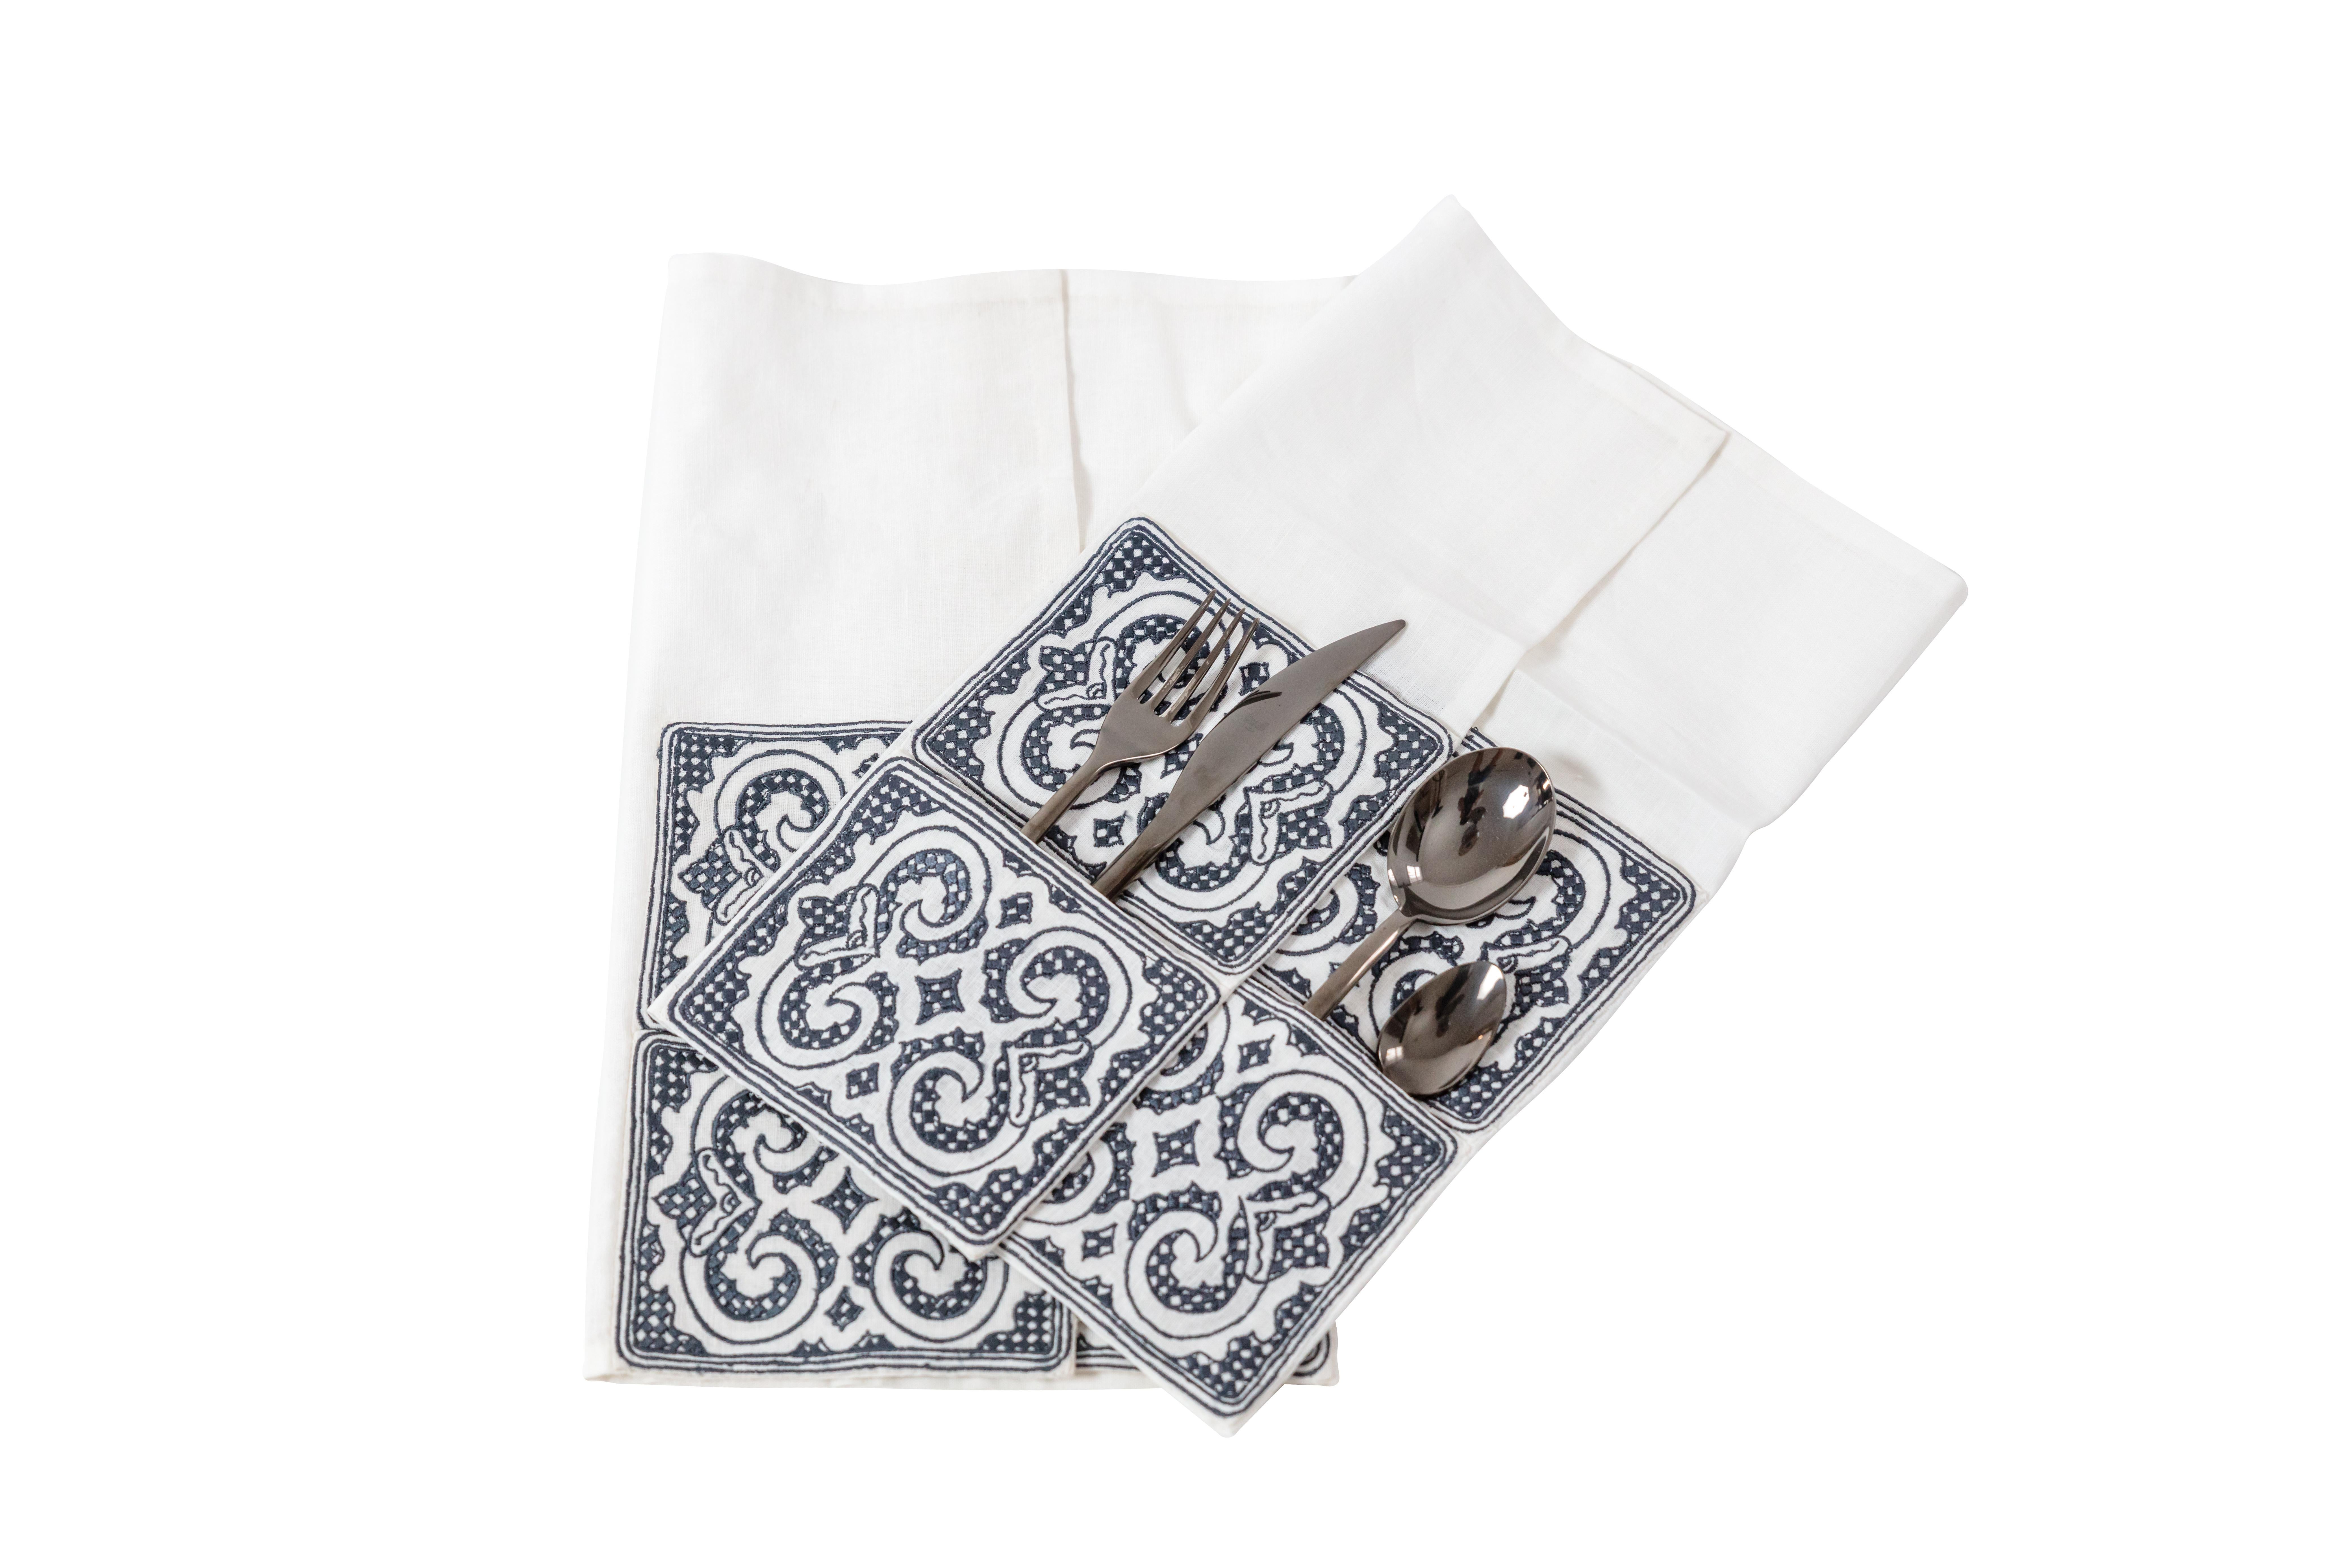 Ce lot de deux serviettes en lin brodées à la main de la collection Ainu de SoShiro, fruit de la collaboration entre l'artiste primé Toru Kaizawa et Shiro Muchiri, est confectionné dans le lin le plus doux et comporte des poches ludiques permettant